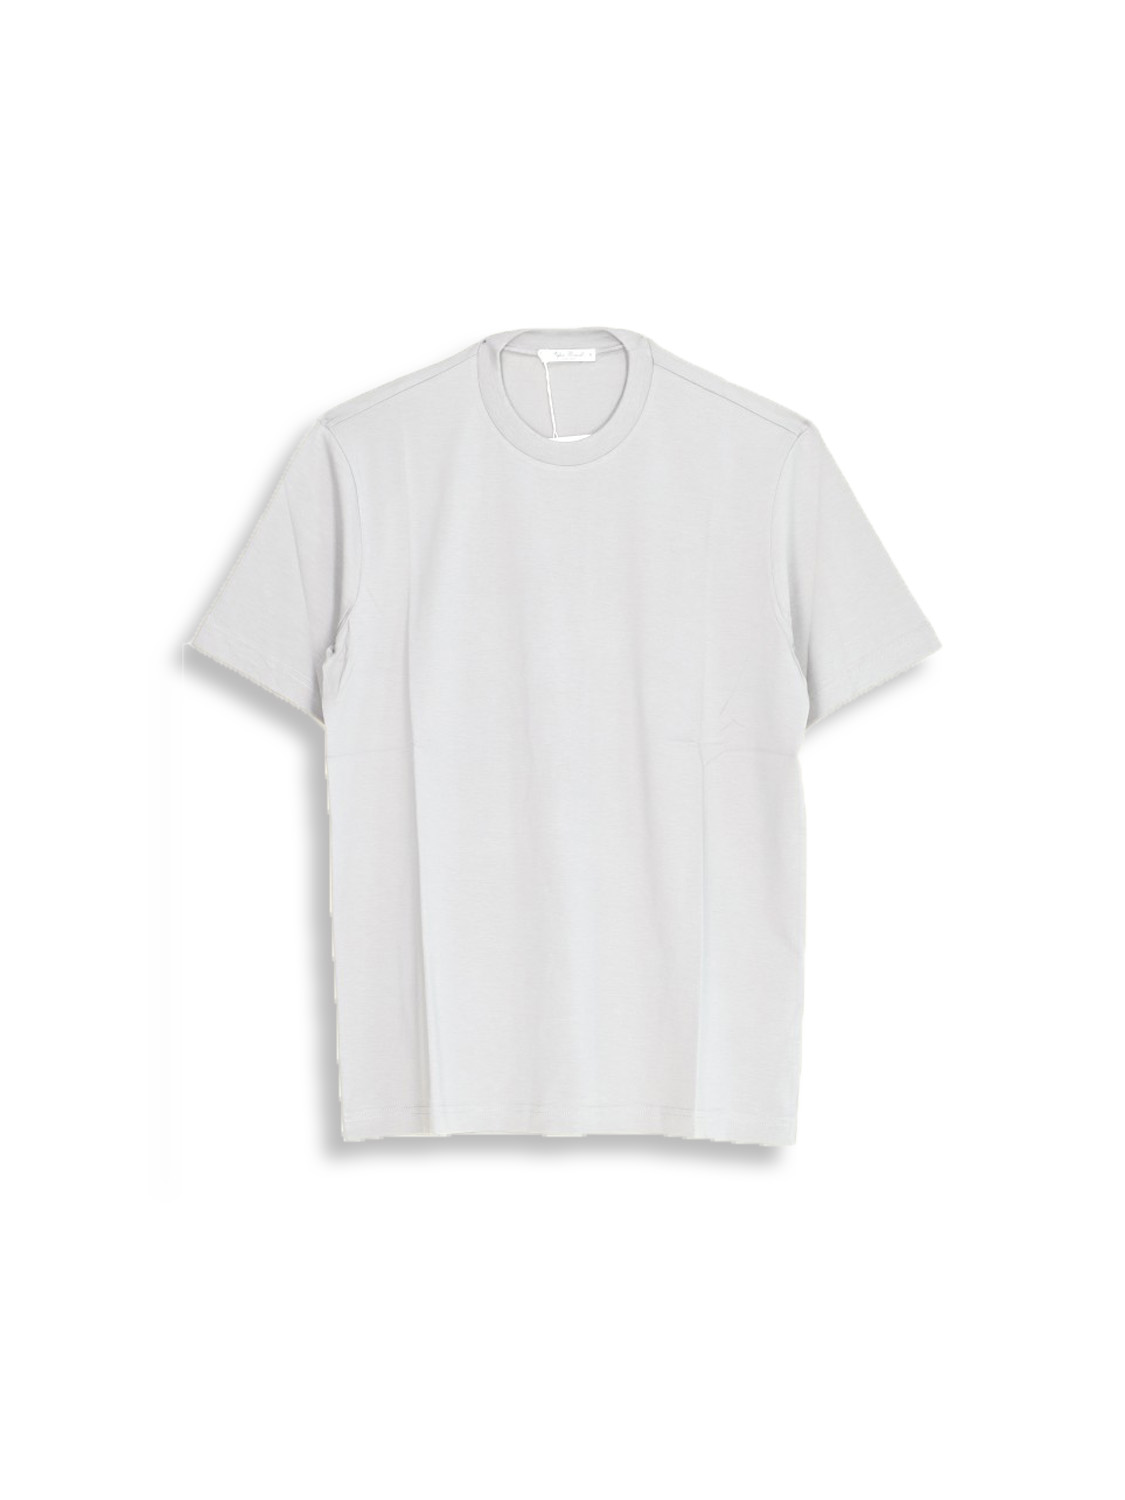 Stefan Brandt Eli 30 – Crew Neck T-Shirt aus Baumwolle grau XL